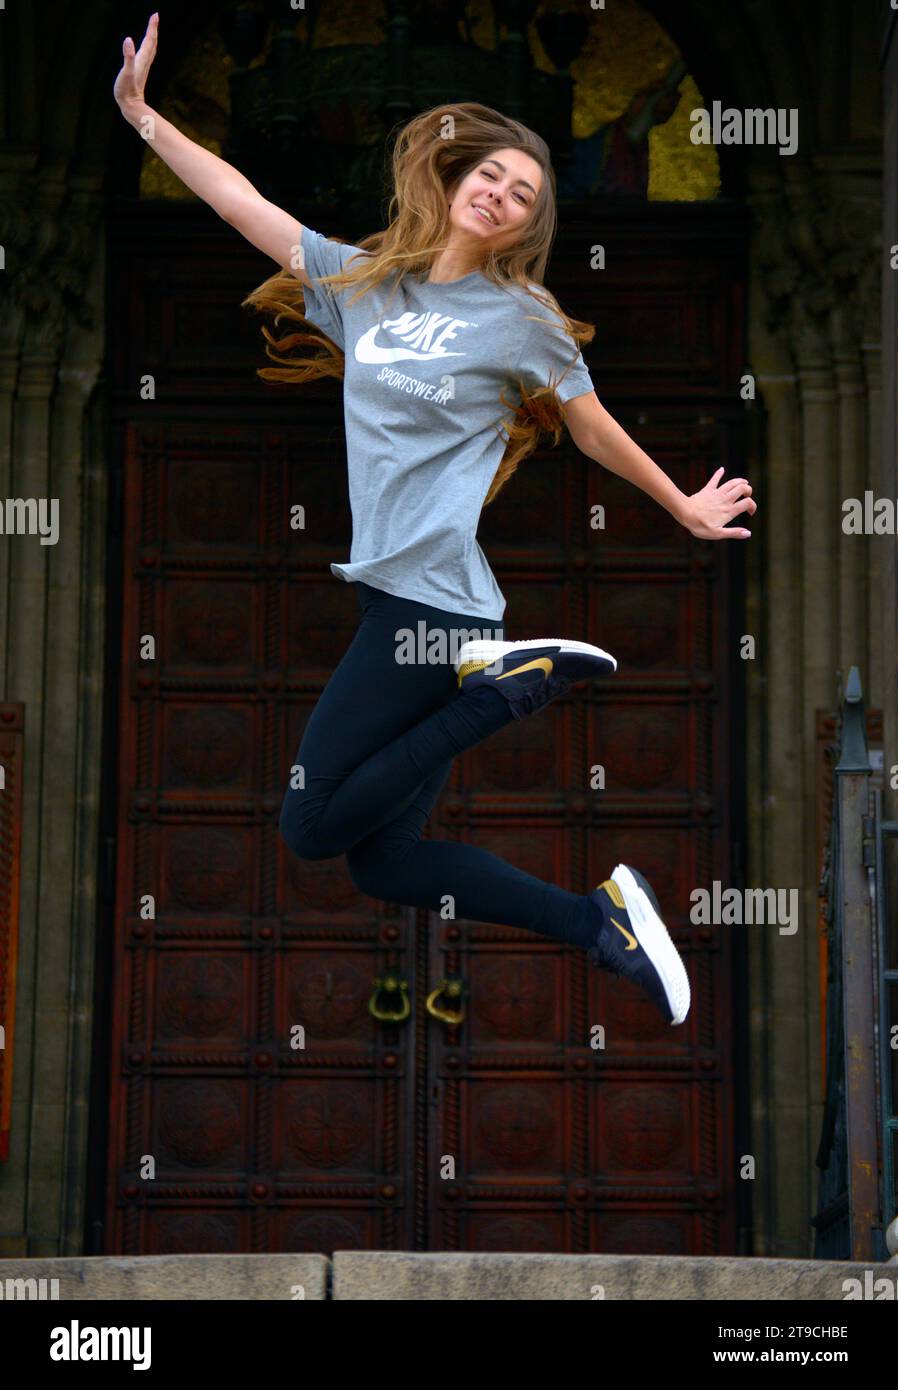 Jeune bulgare Pretty Girl porter de nouvelles chaussures de sport Nike chaussures courir Happy Jump porter T-shirt tee-shirt sauter devant l'église orthodoxe porte Sofia Bulgarie Banque D'Images